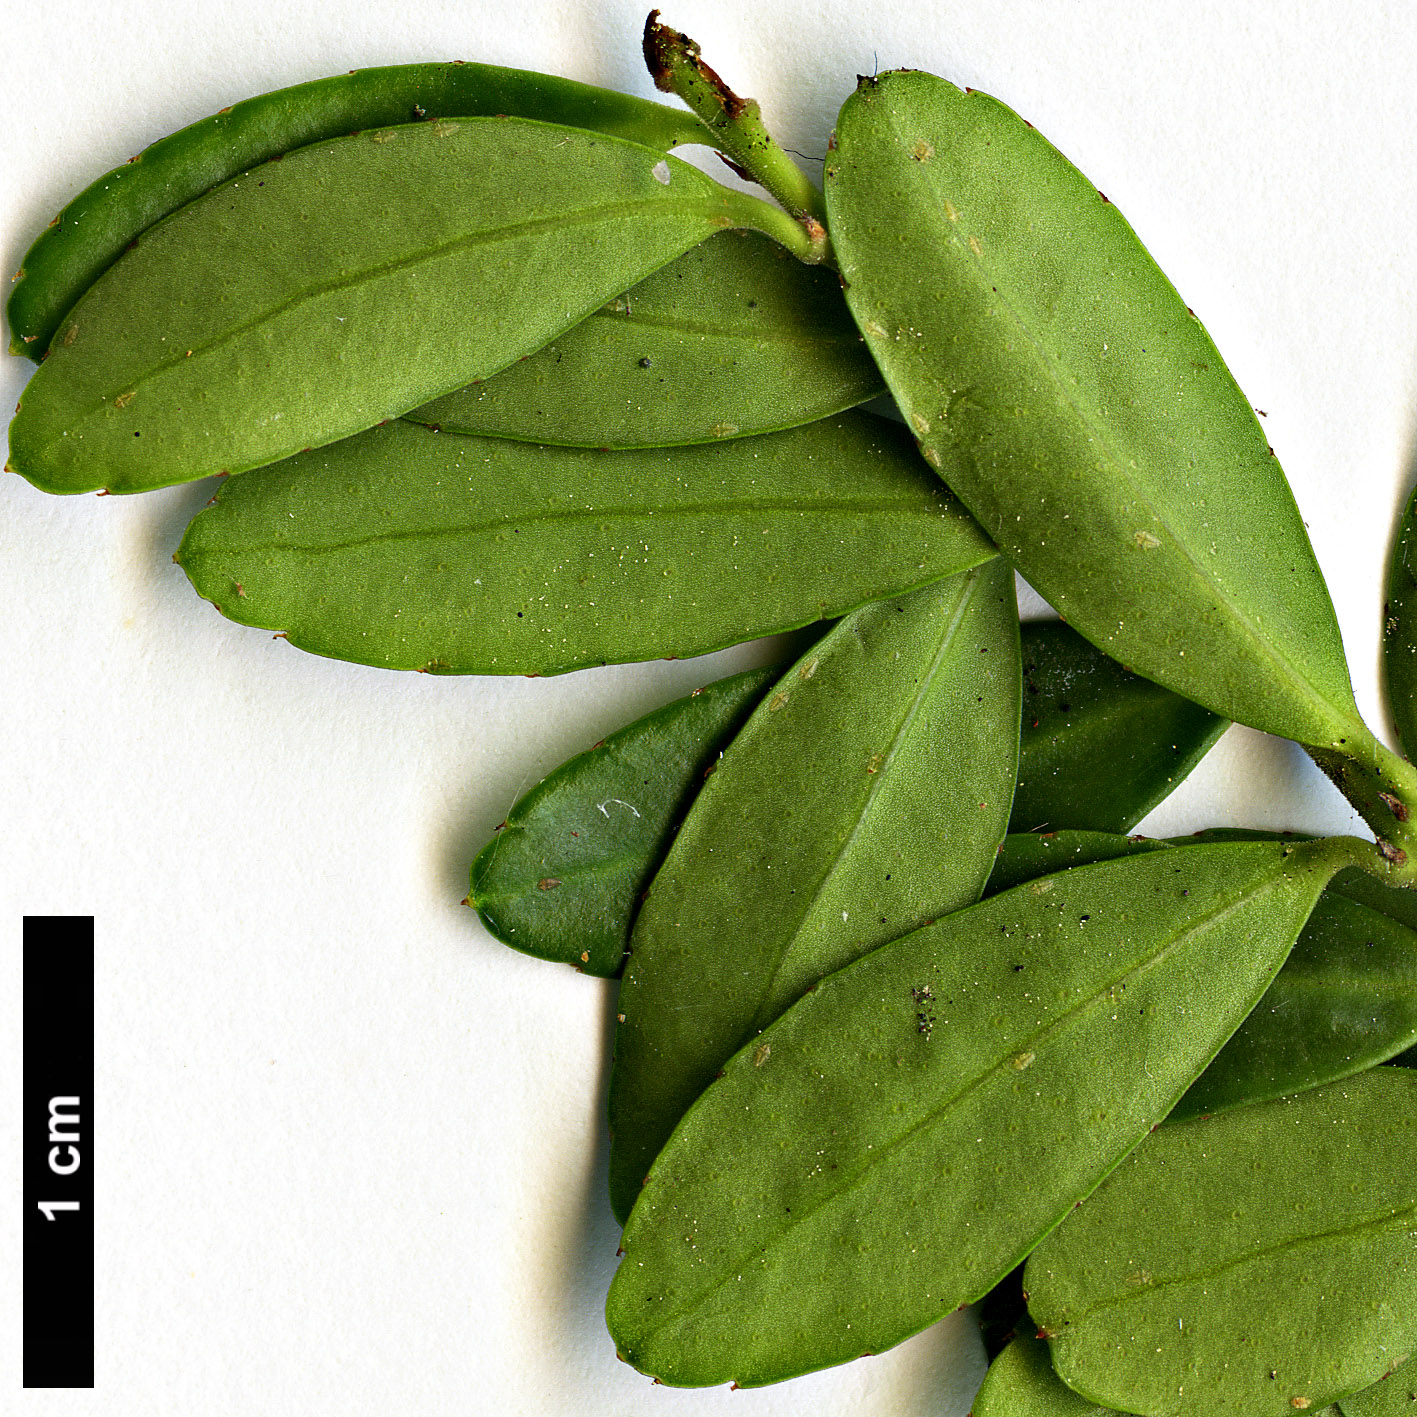 High resolution image: Family: Aquifoliaceae - Genus: Ilex - Taxon: crenata